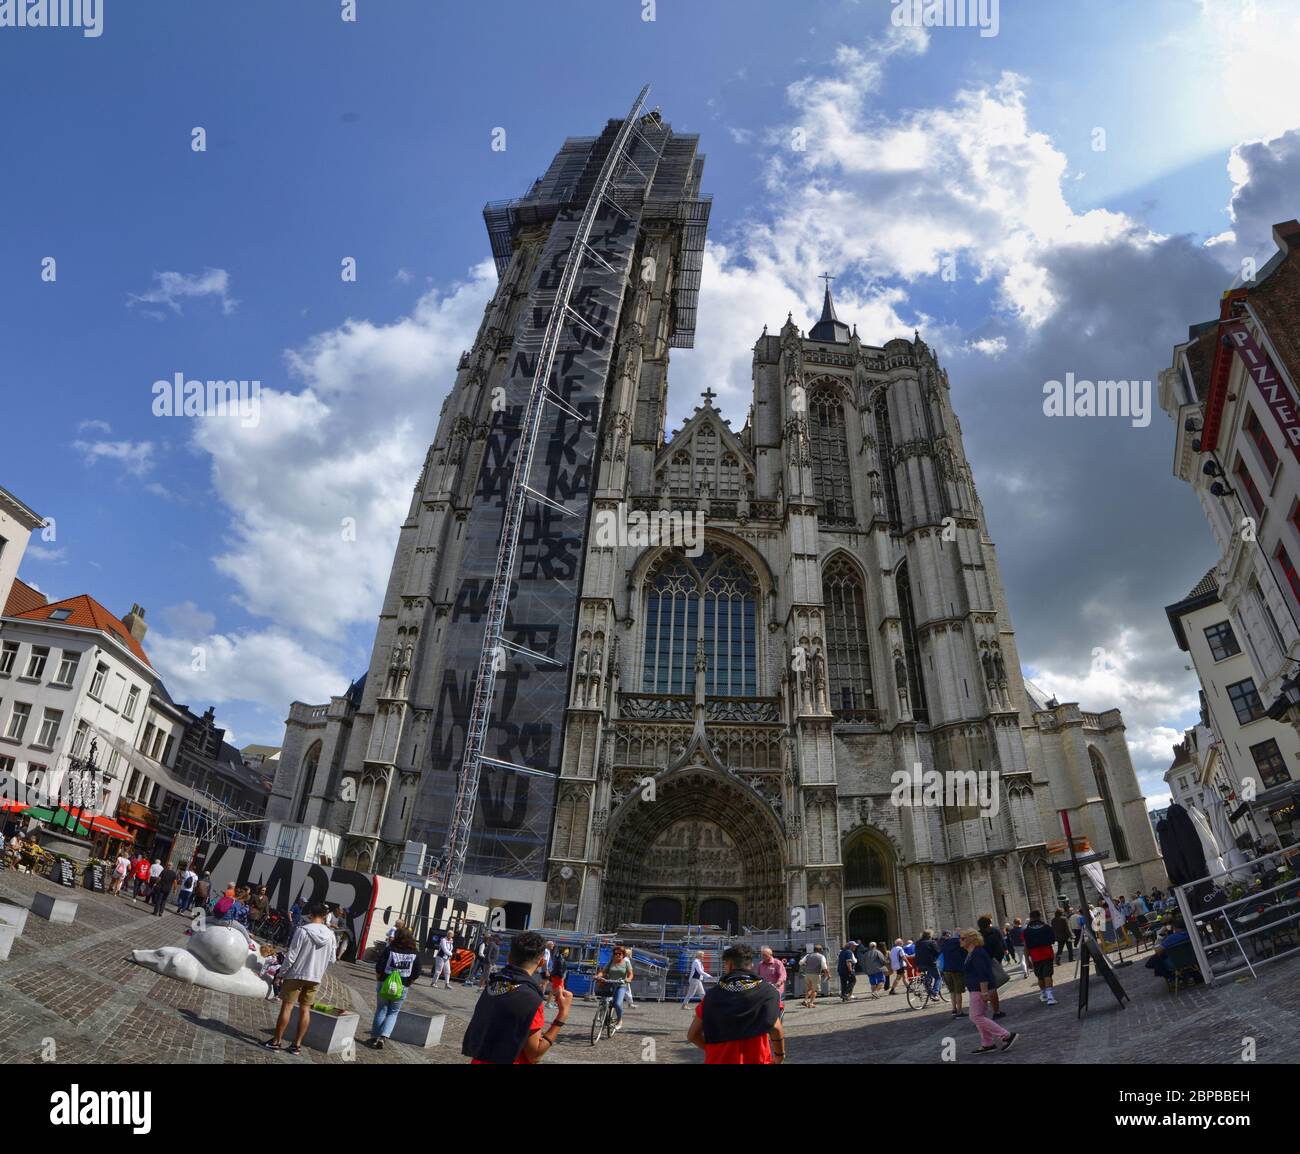 Antwerpen, Flandern, Belgien. August 2019. Blick auf die imposante Eingangsfassade des Doms. Man kann das Gerüst auf dem Glockenturm sehen, viele pe Stockfoto